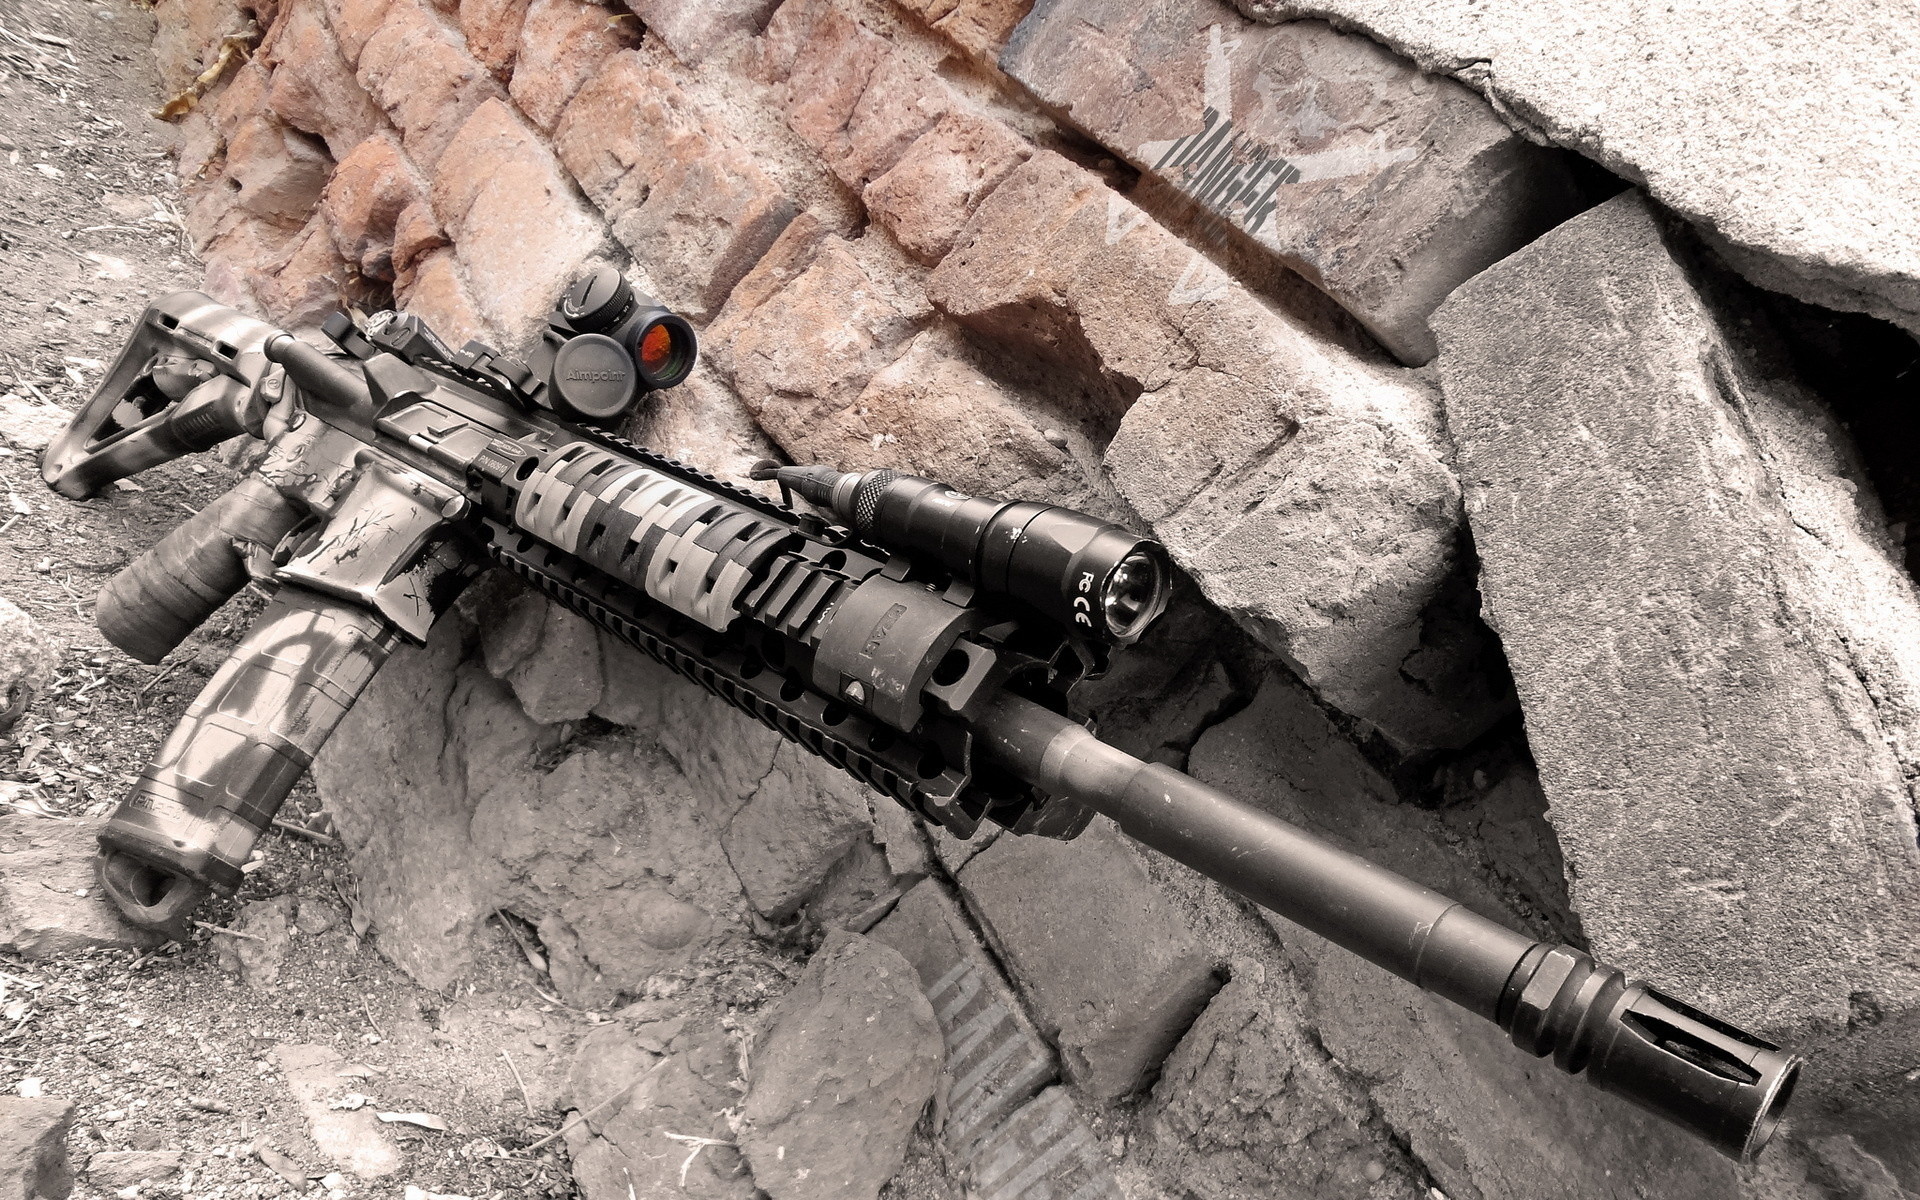 1920x1200 Colorado AR-15 military police weapon gun wallpaper |  | 210285 |  WallpaperUP